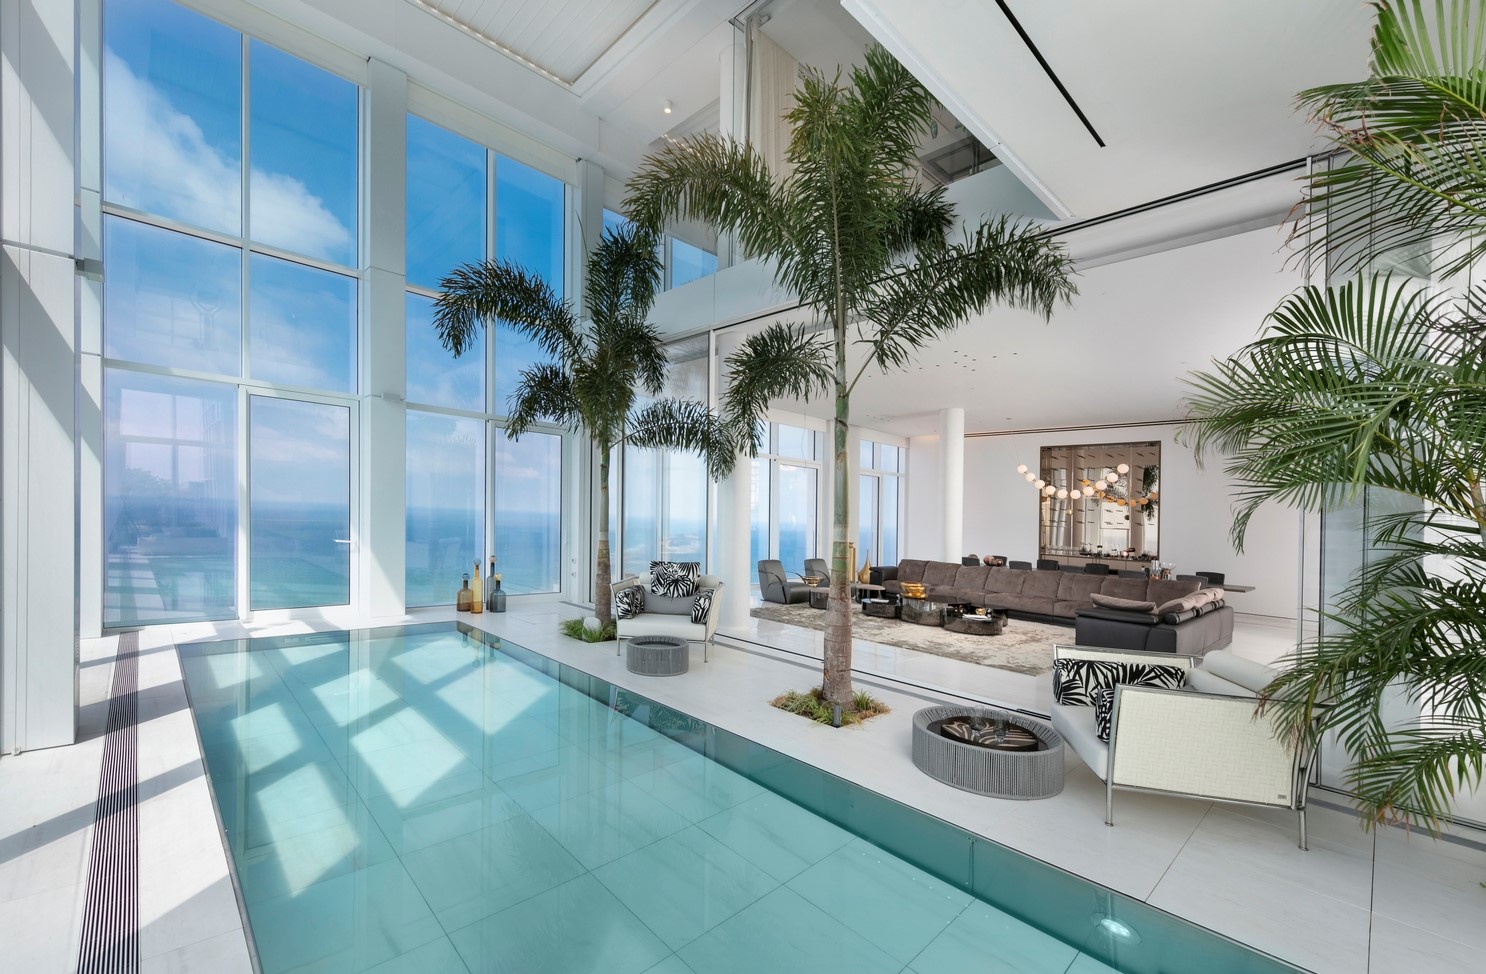 Luxusní bazén s posuvným dnem v exkluzivním mrakodrapu v Izraeli | IMAGINOX